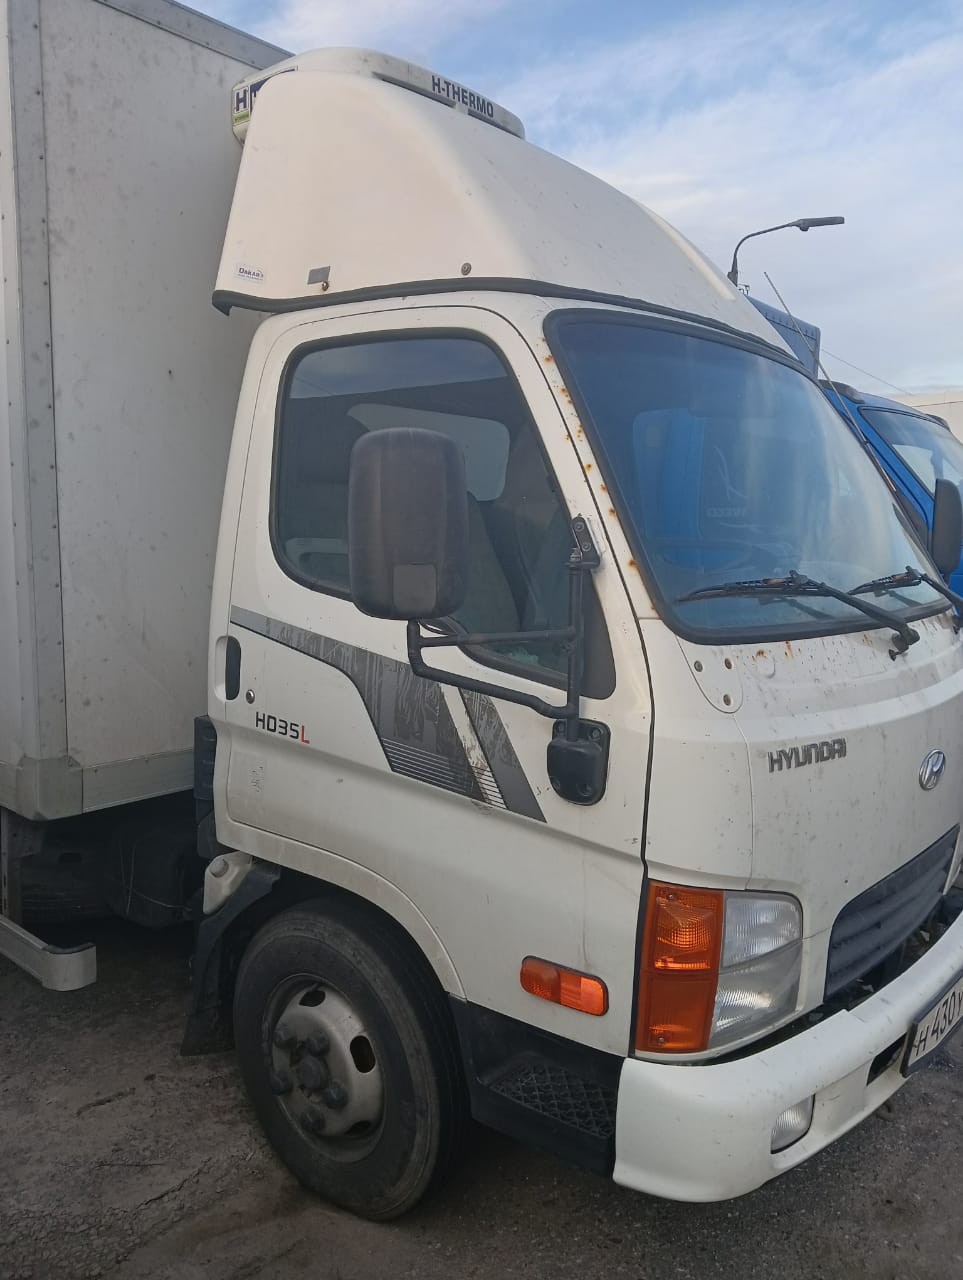 Транспортное средство - грузовой фургон Hyundai 27507А, 2018 года выпуска, государственный номер Н43